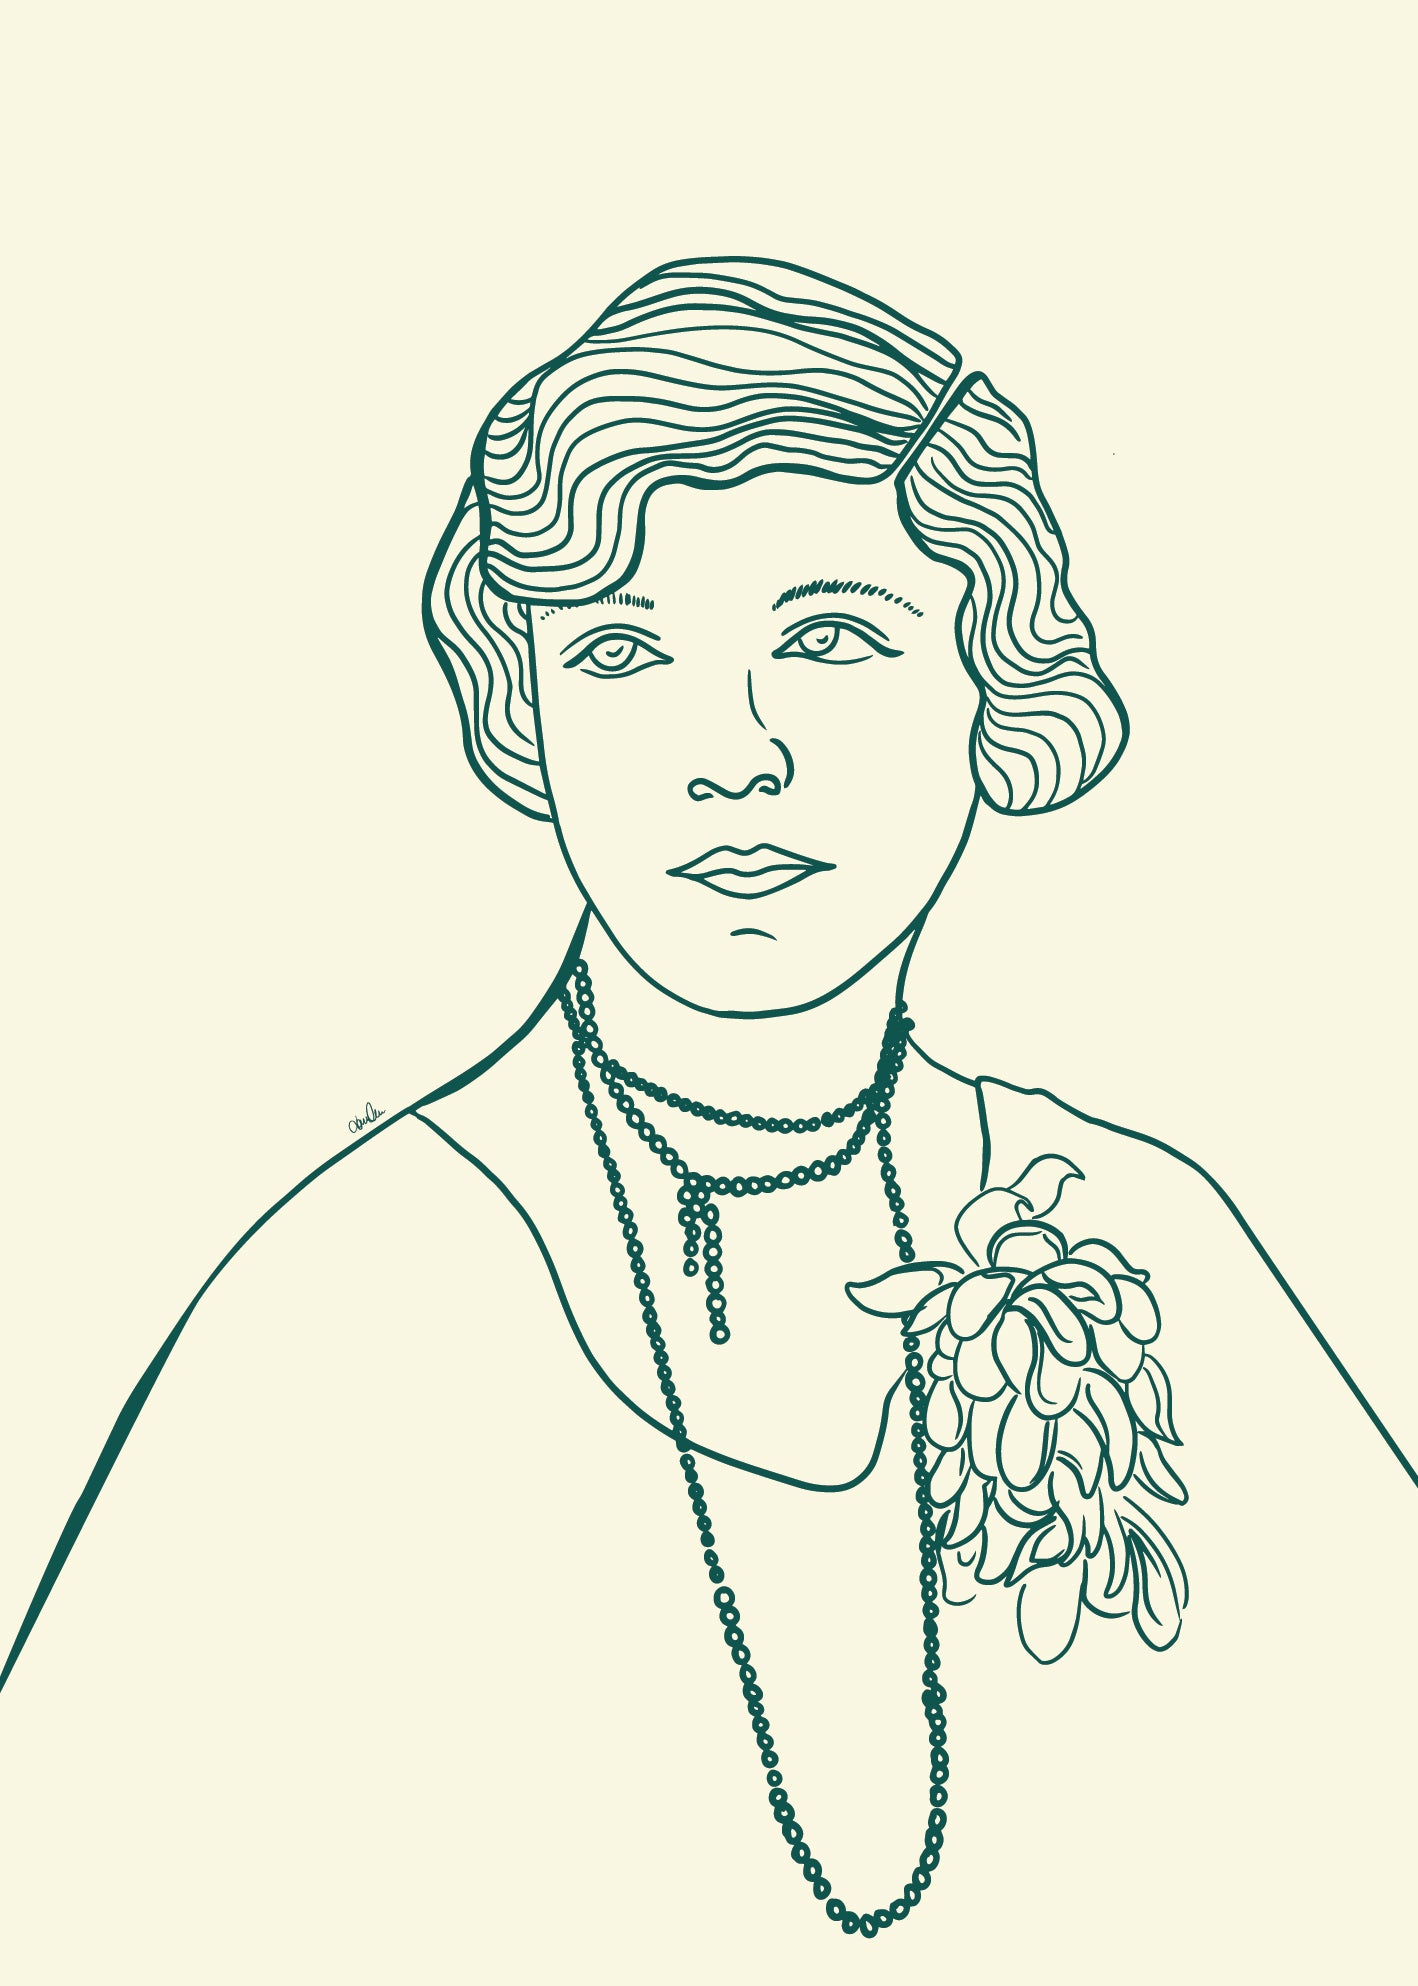 Strektegning av vintage kvinne i grønne toner. Plakat til veggen